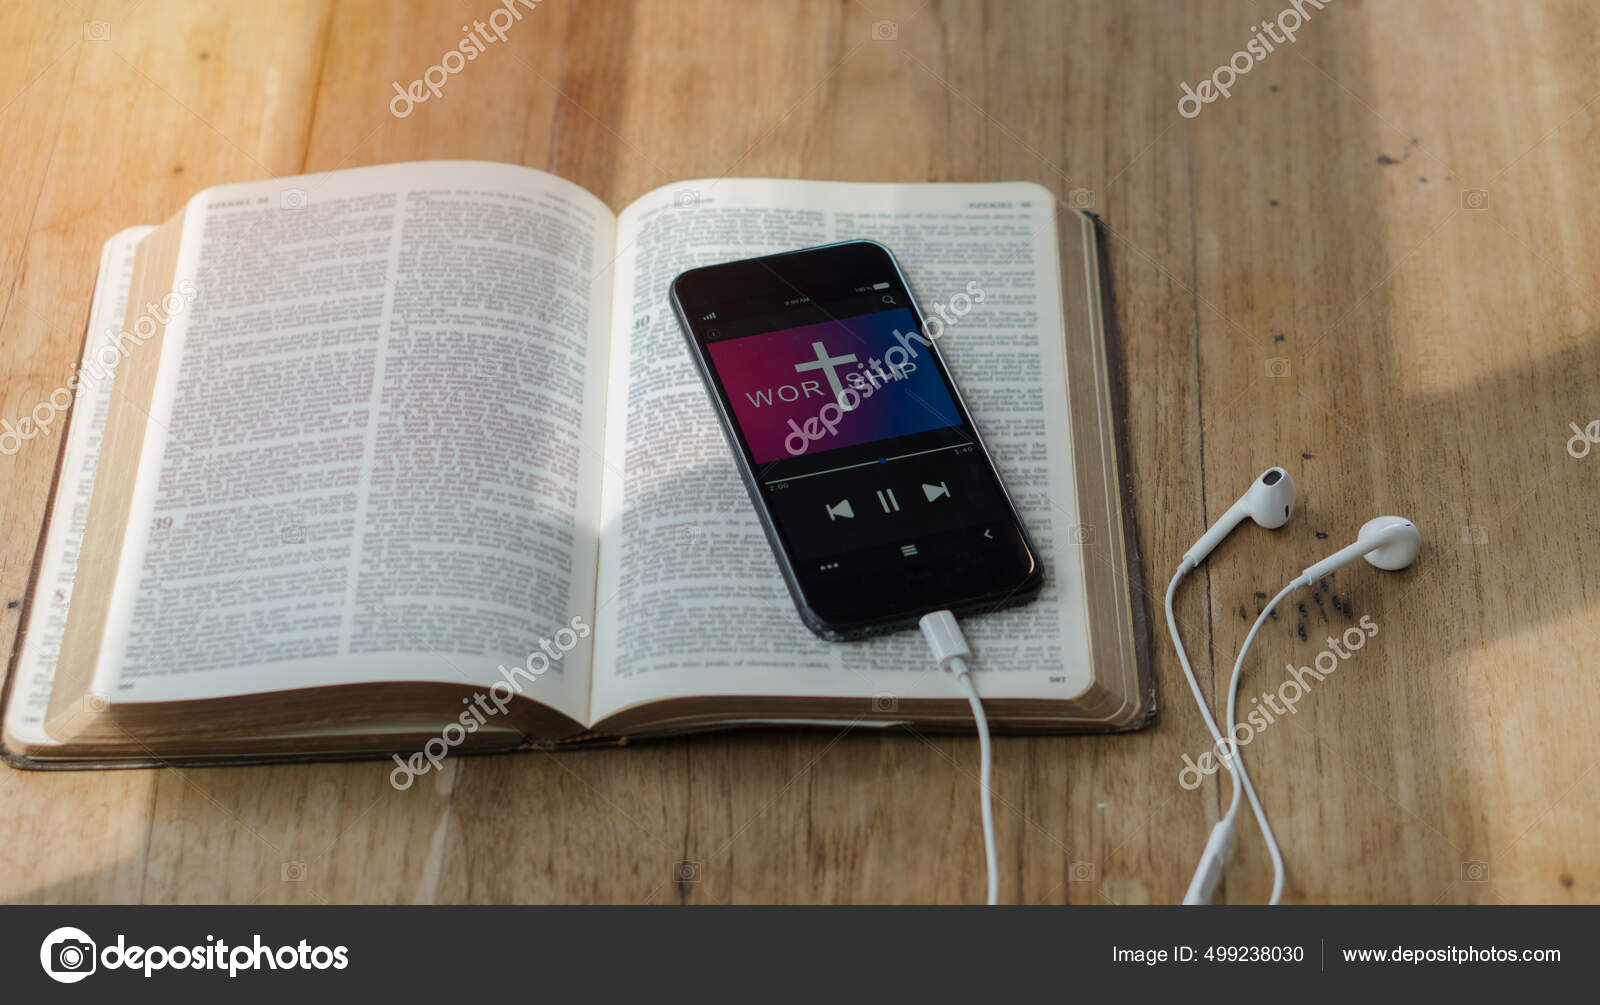 Bíblia com fones de ouvido e smartphone